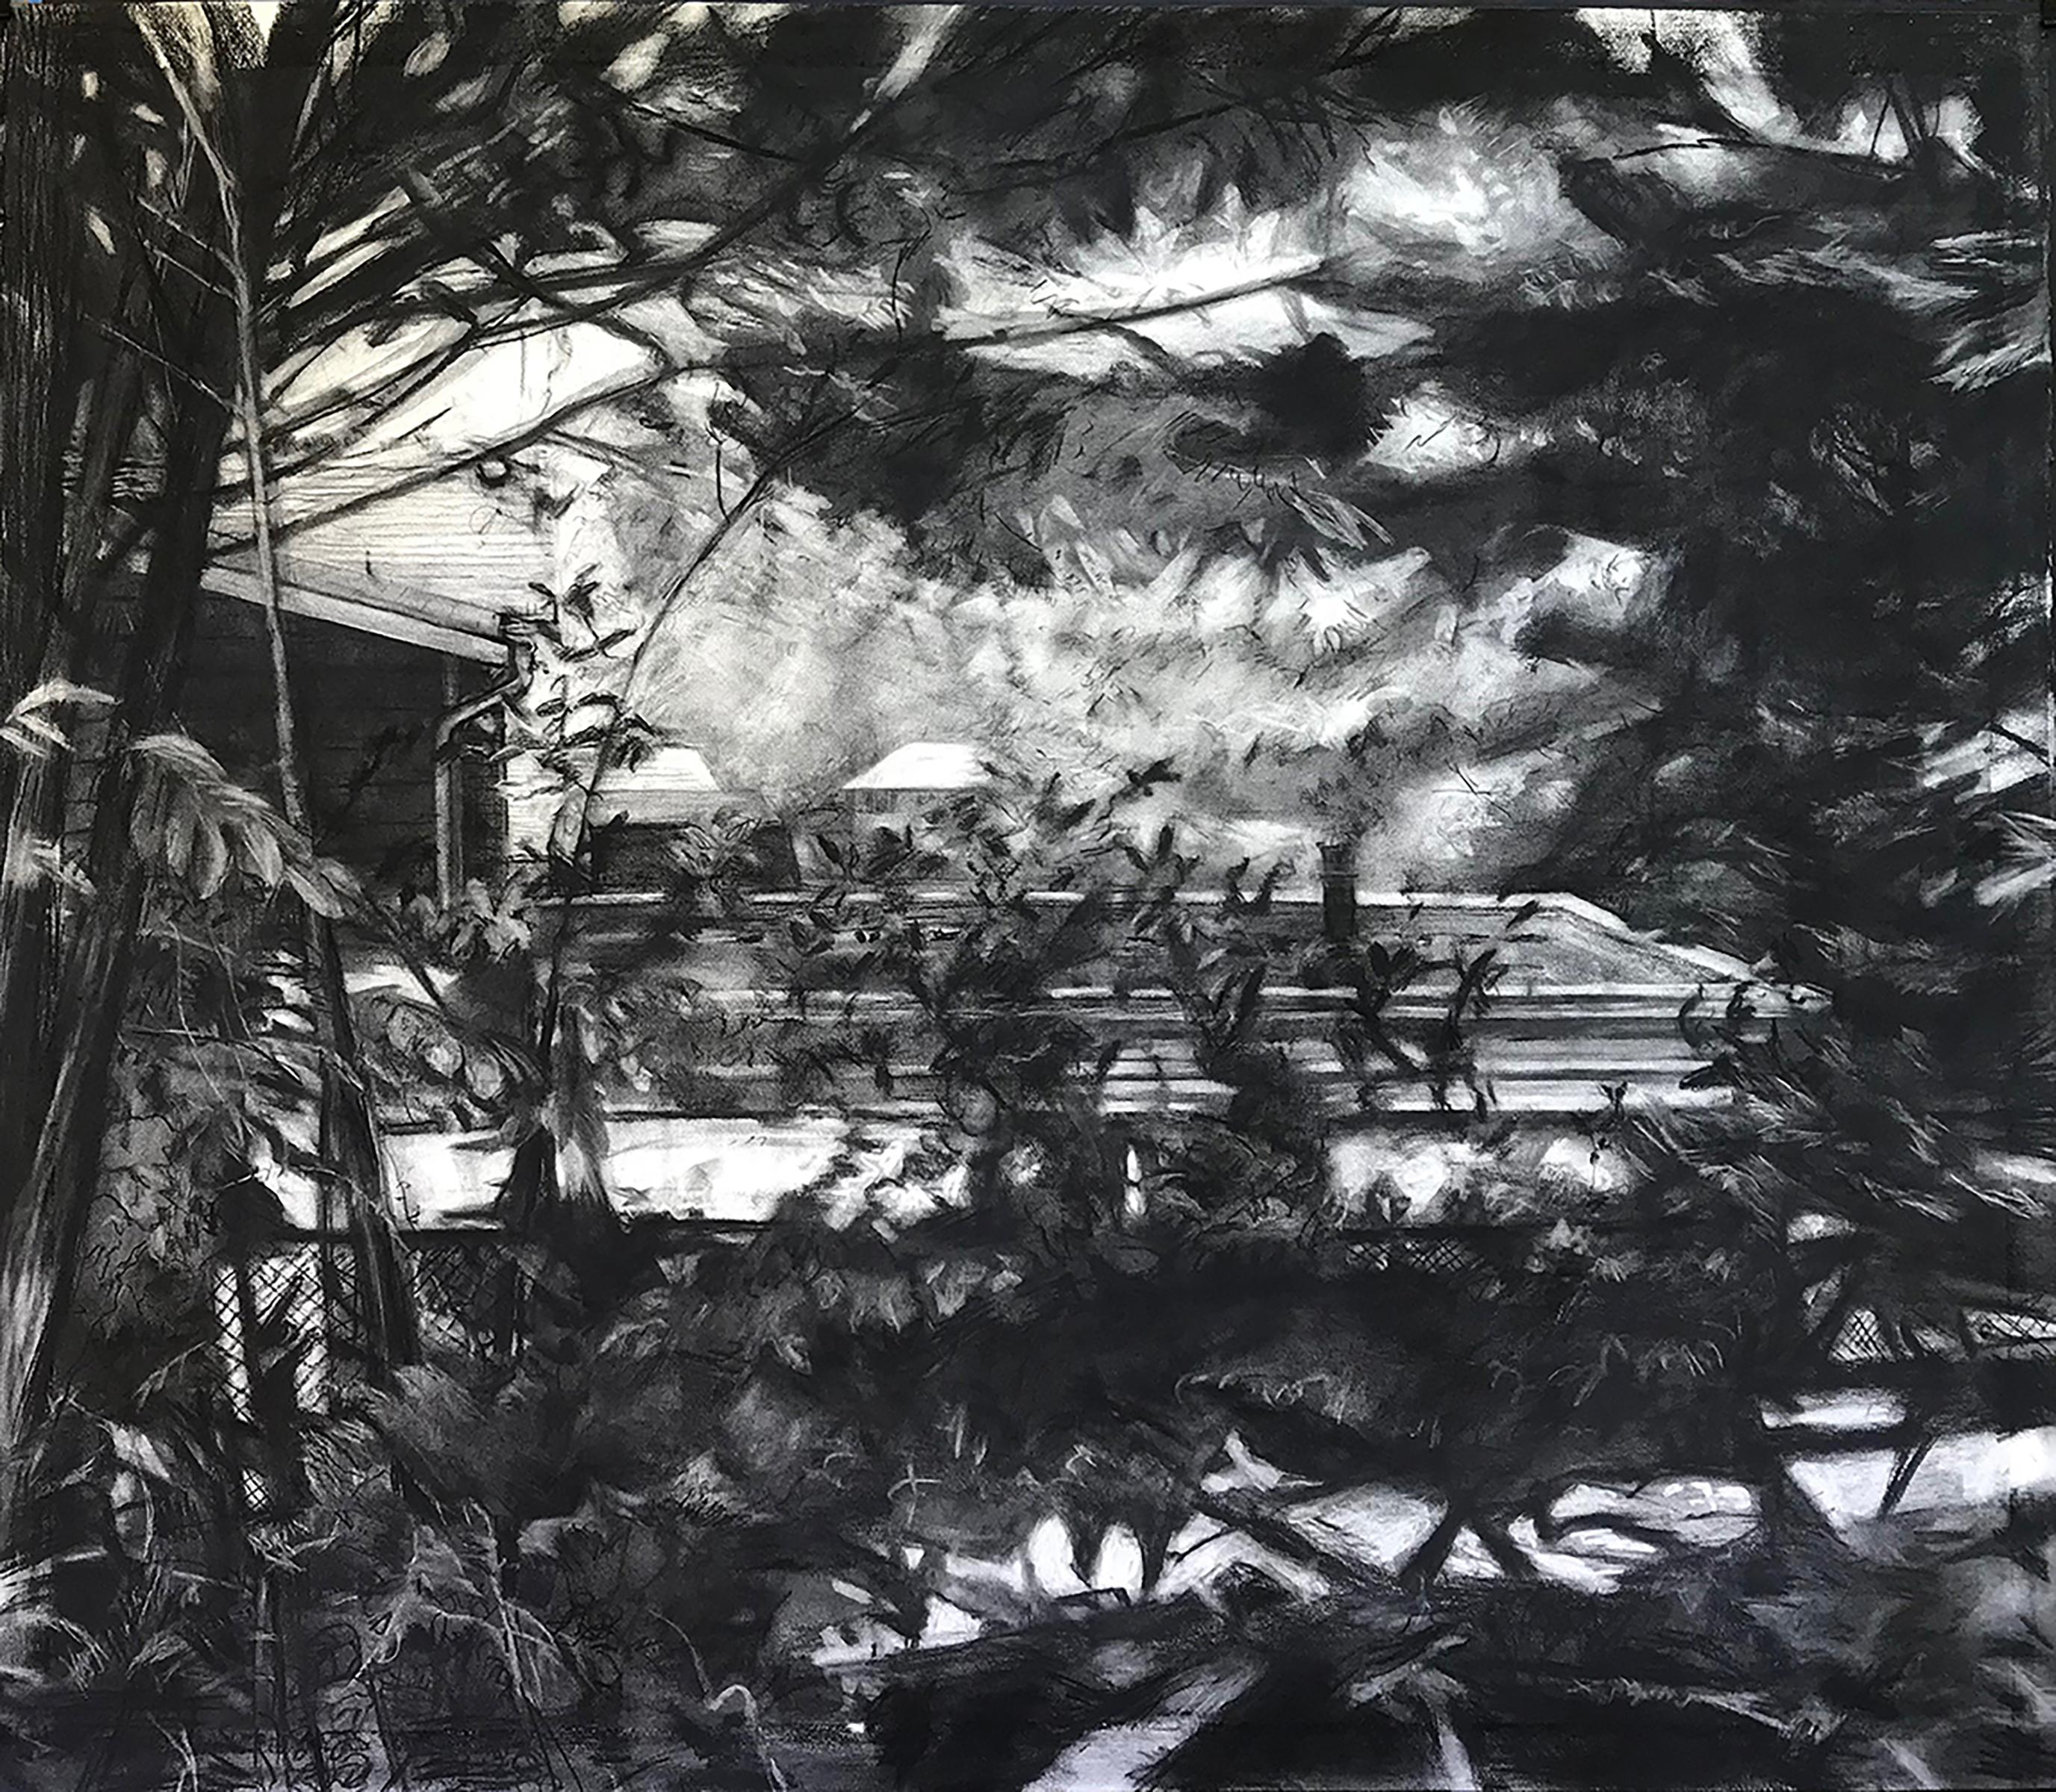 Eilis Crean Abstract Painting – "Home" - Holzkohle, Natur, Bäume, große Zeichnung, Klack und Weiß